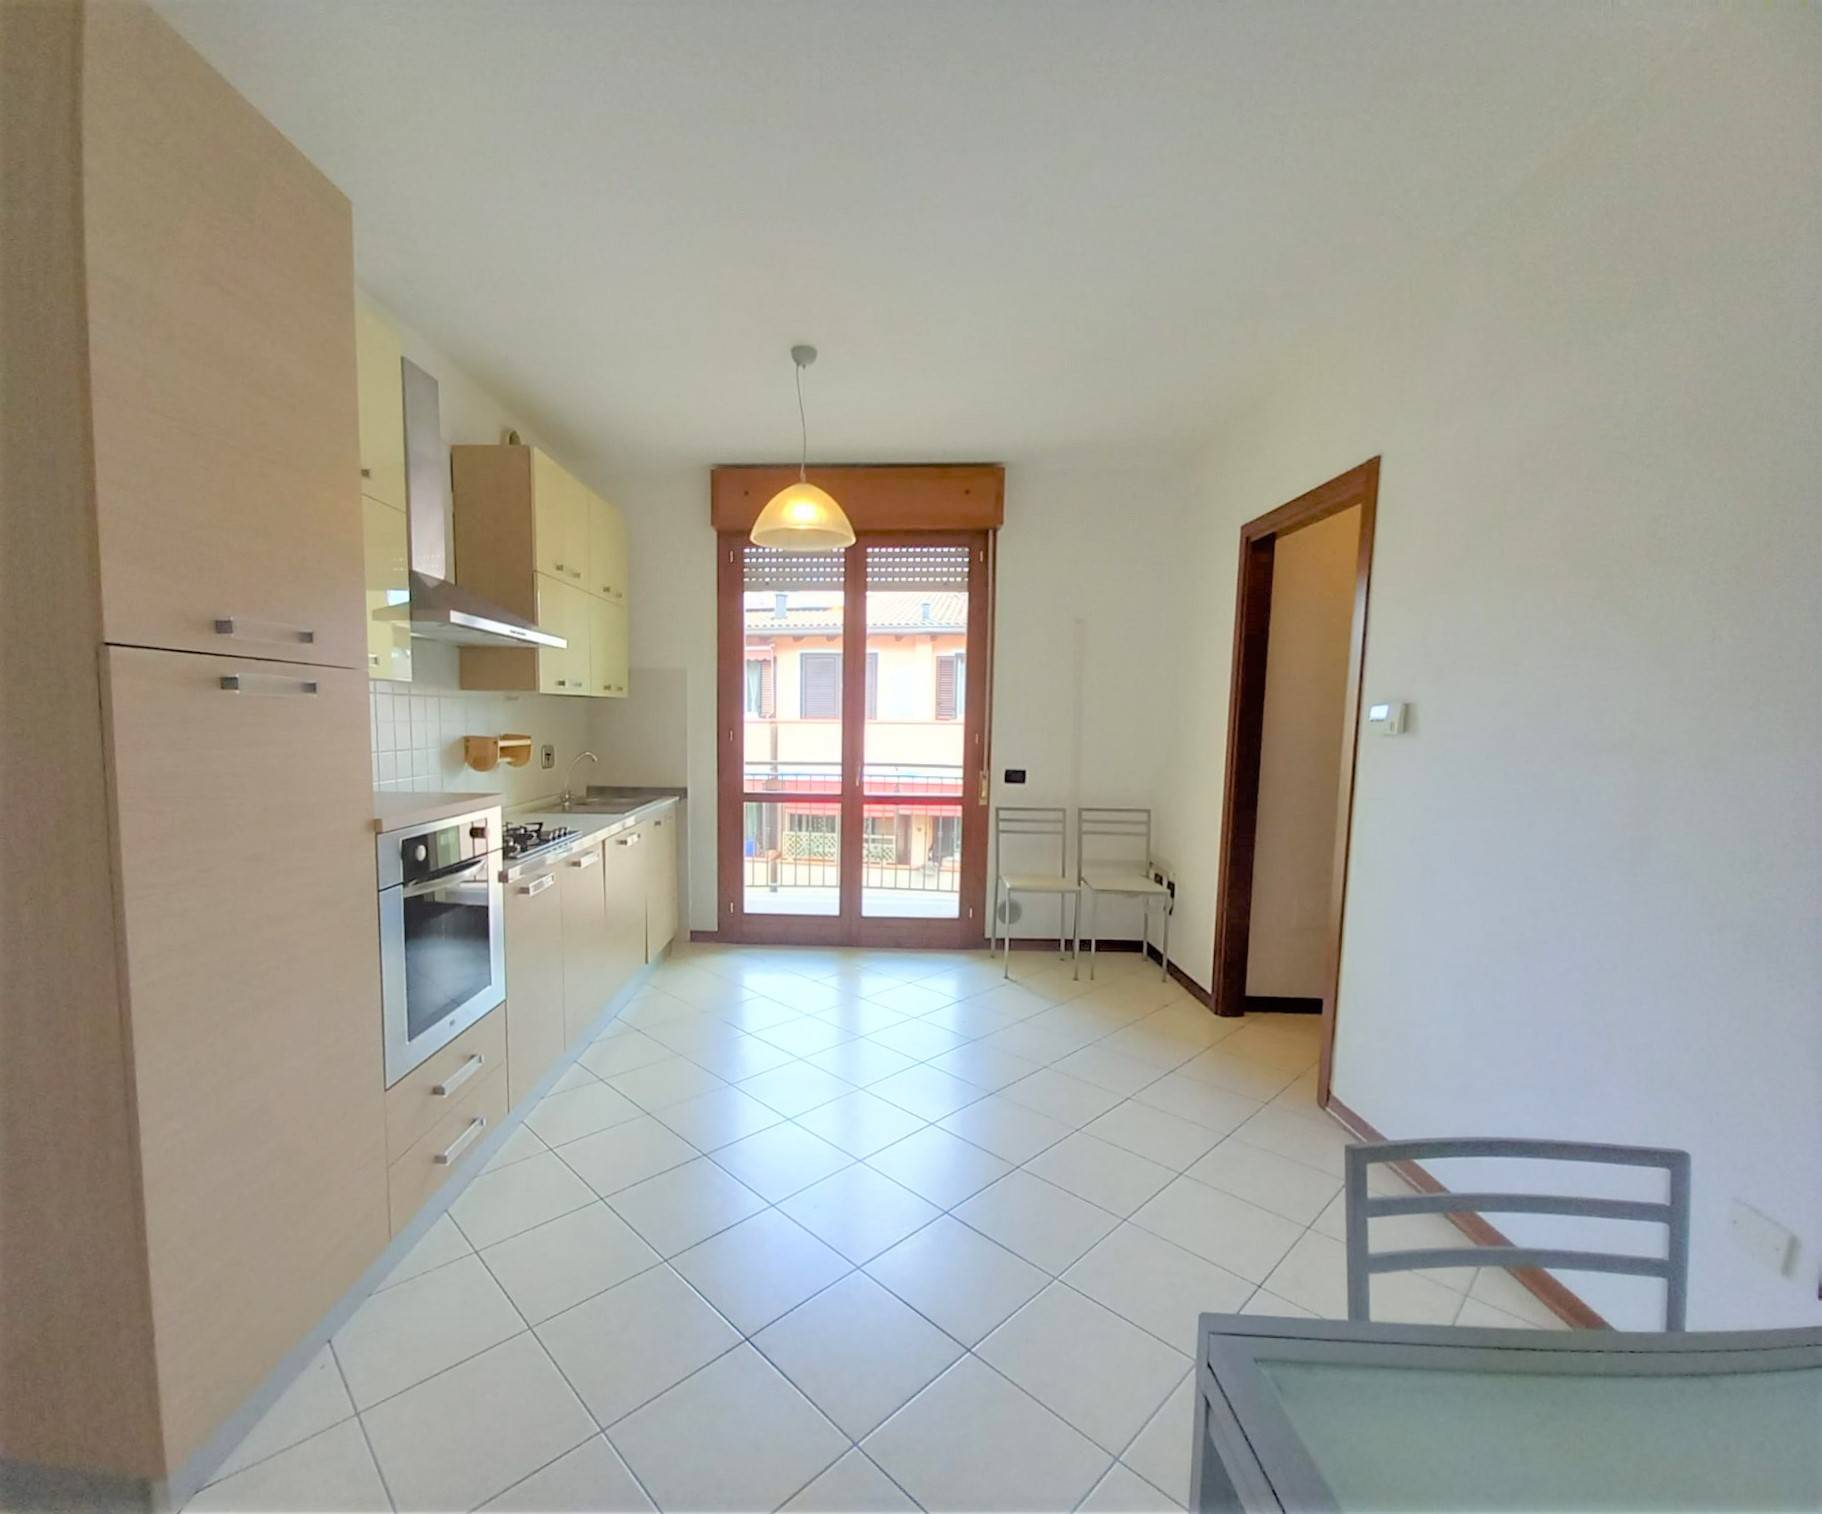 Appartamento in vendita a Ferrara, 3 locali, zona Località: SanMartino, prezzo € 98.000 | PortaleAgenzieImmobiliari.it